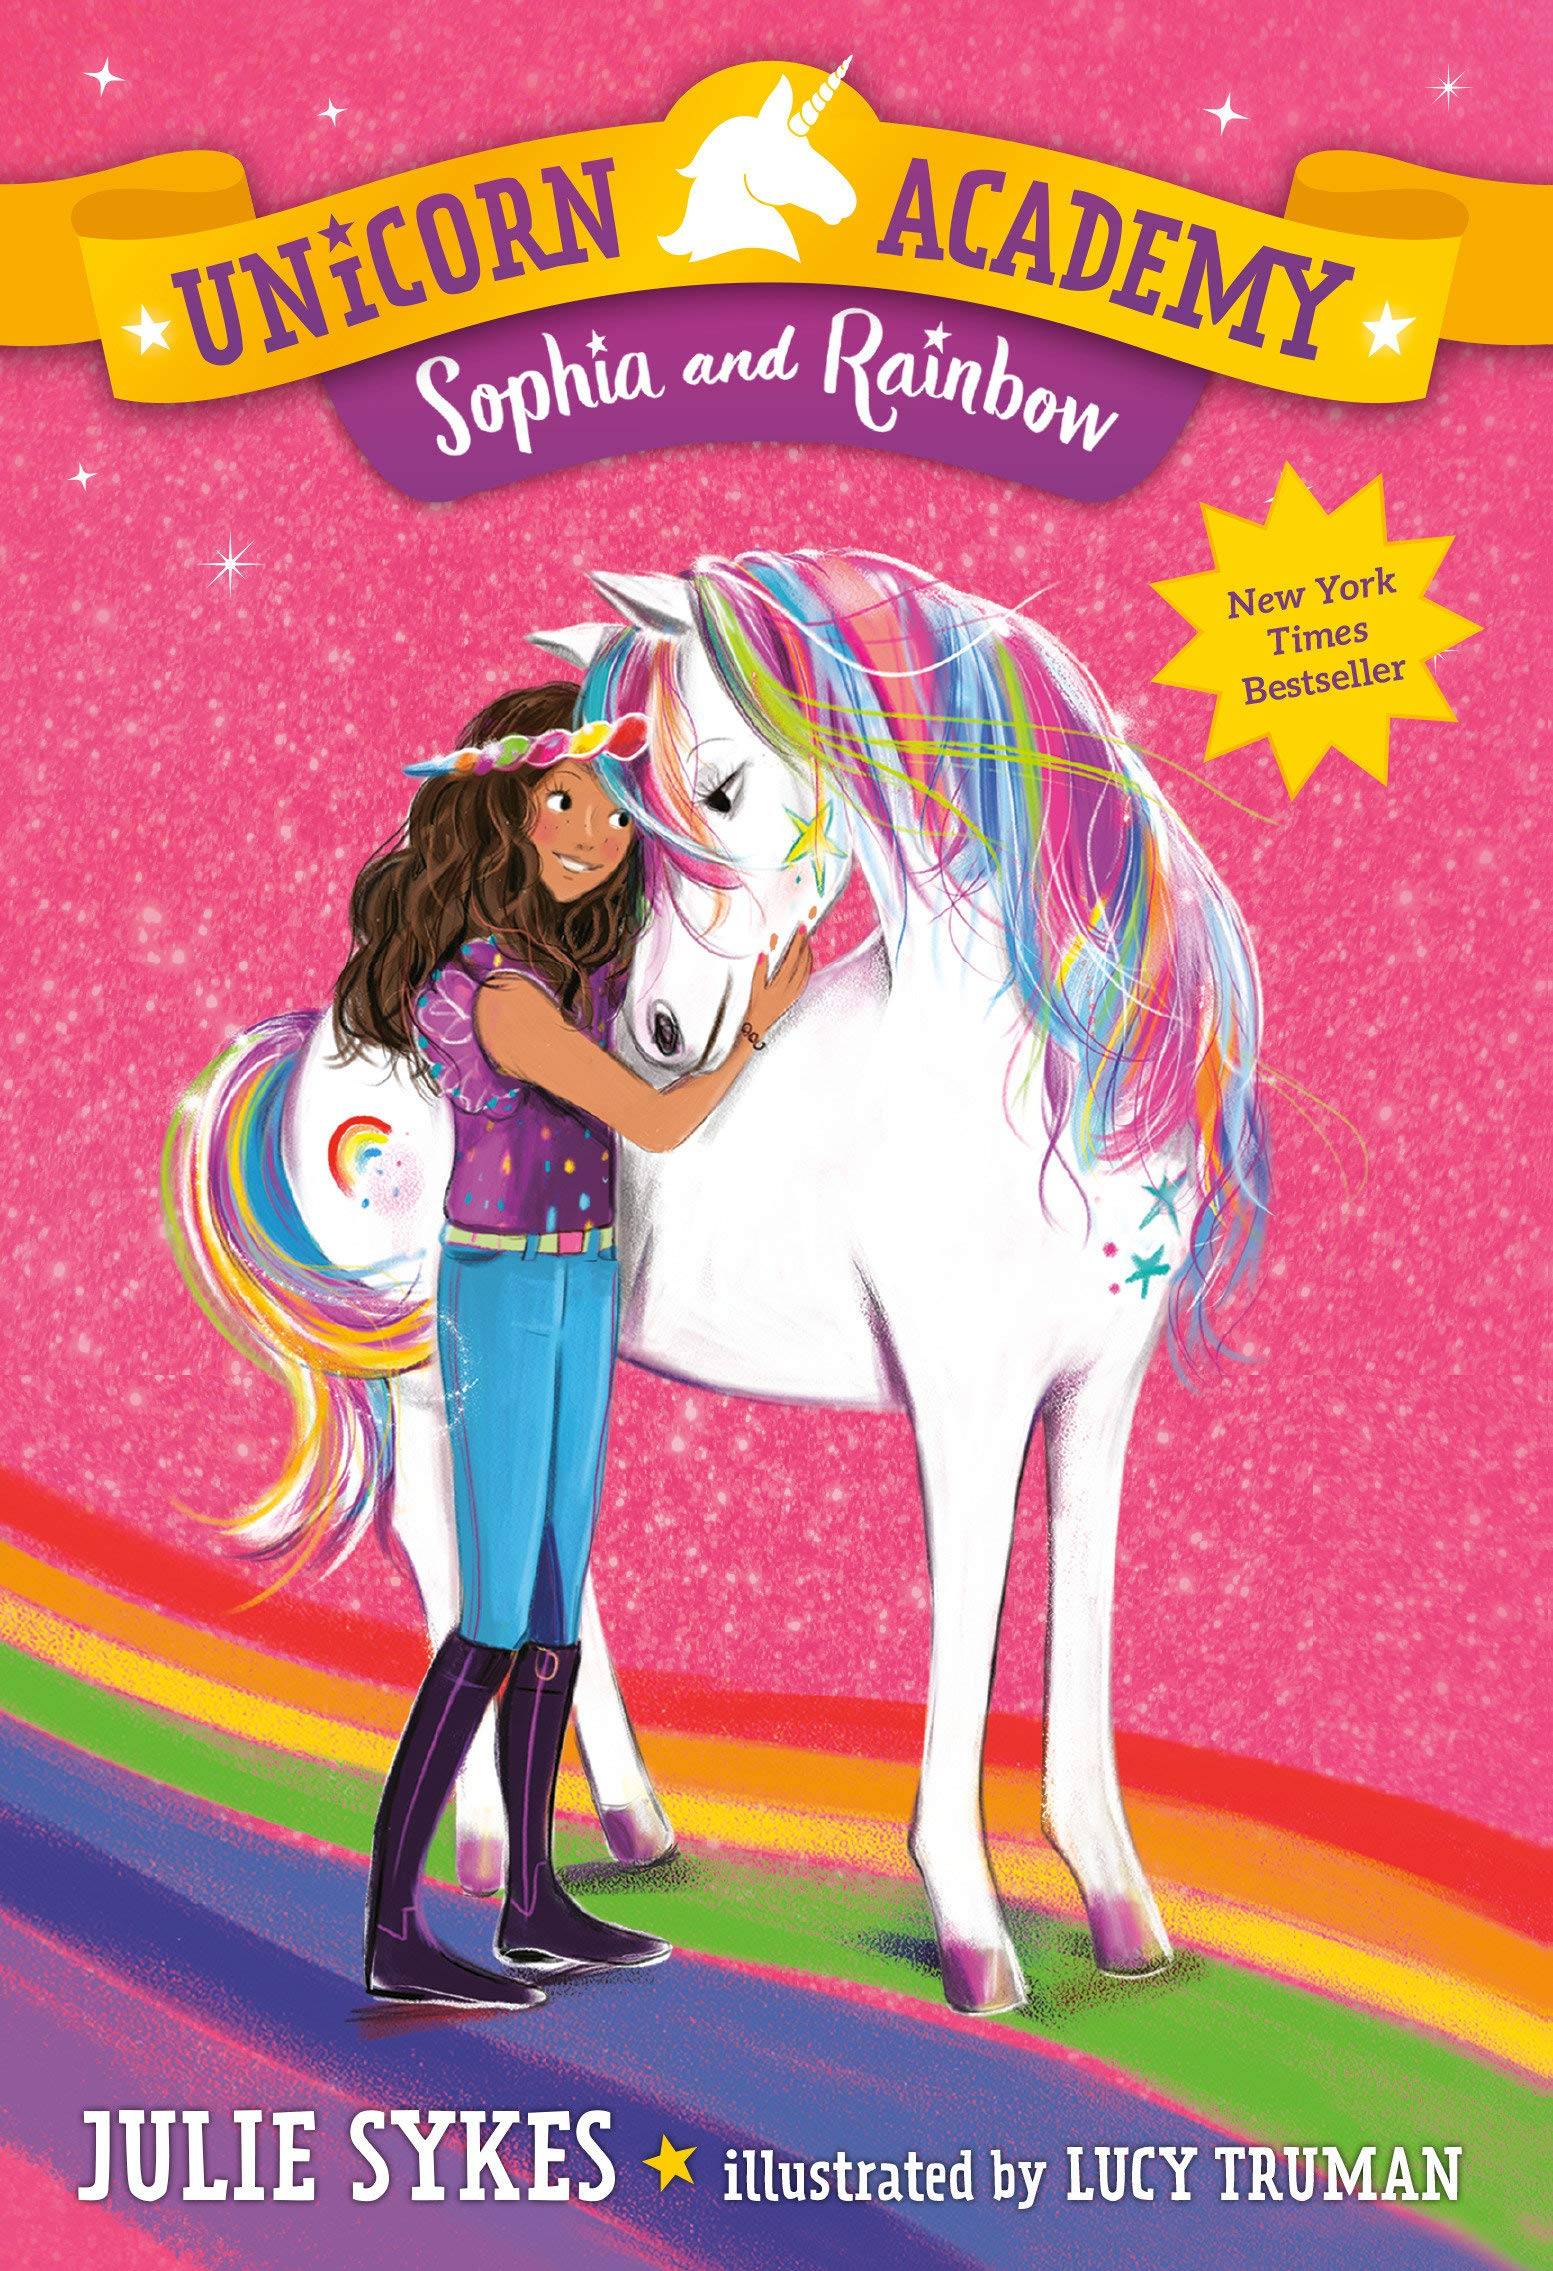 IMG : Unicorn Academy Sophia and the Rainbow